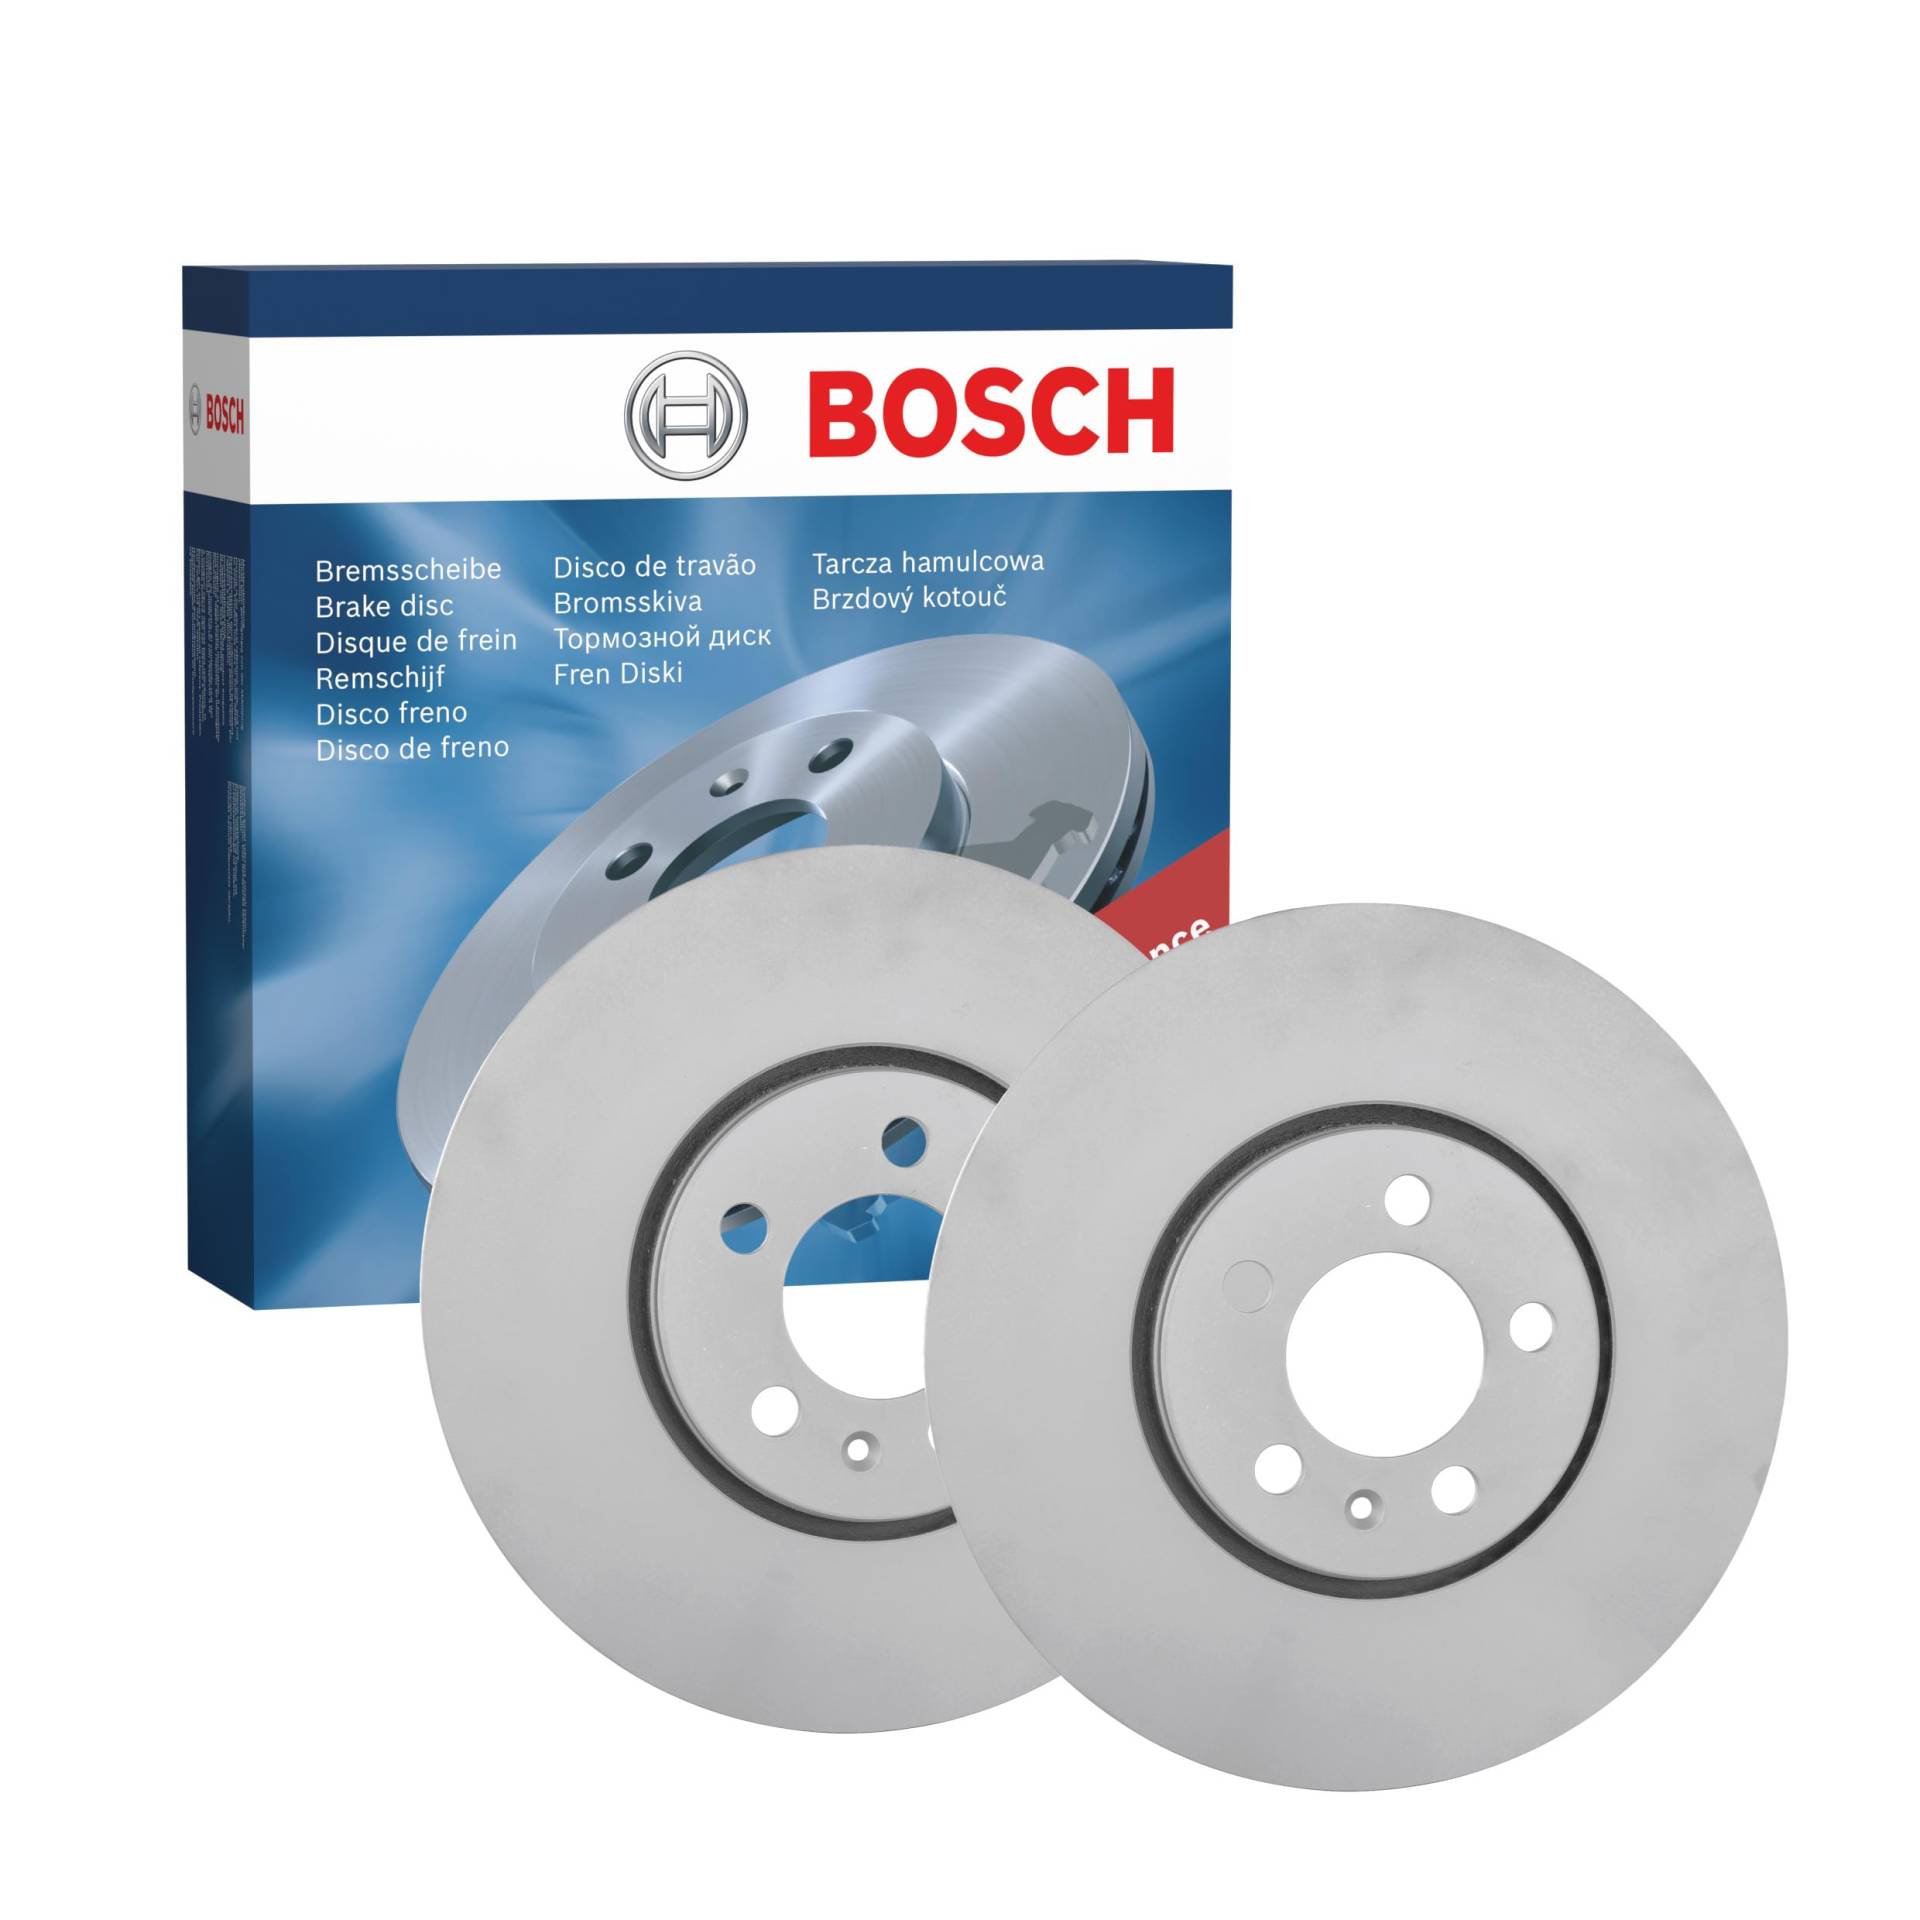 Bosch BD766 Bremsscheiben - Vorderachse - ECE-R90 Zertifizierung - zwei Bremsscheiben pro Set von Bosch Automotive